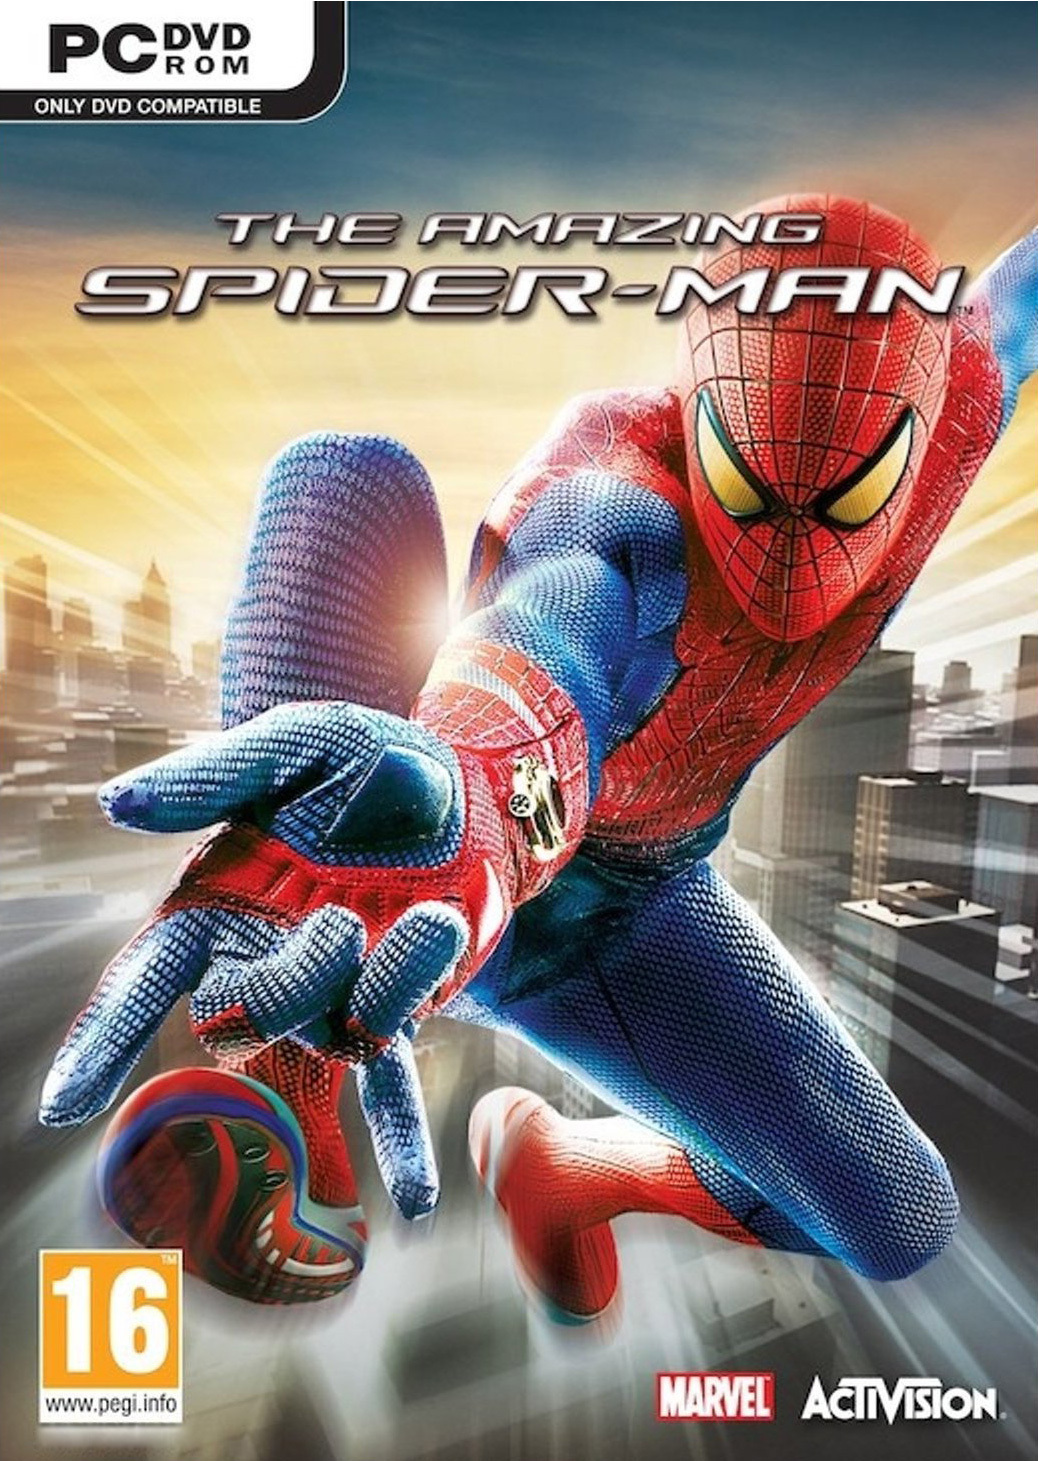 https://image.jeuxvideo.com/images/jaquettes/00045561/jaquette-the-amazing-spider-man-pc-cover-avant-g-1353338861.jpg